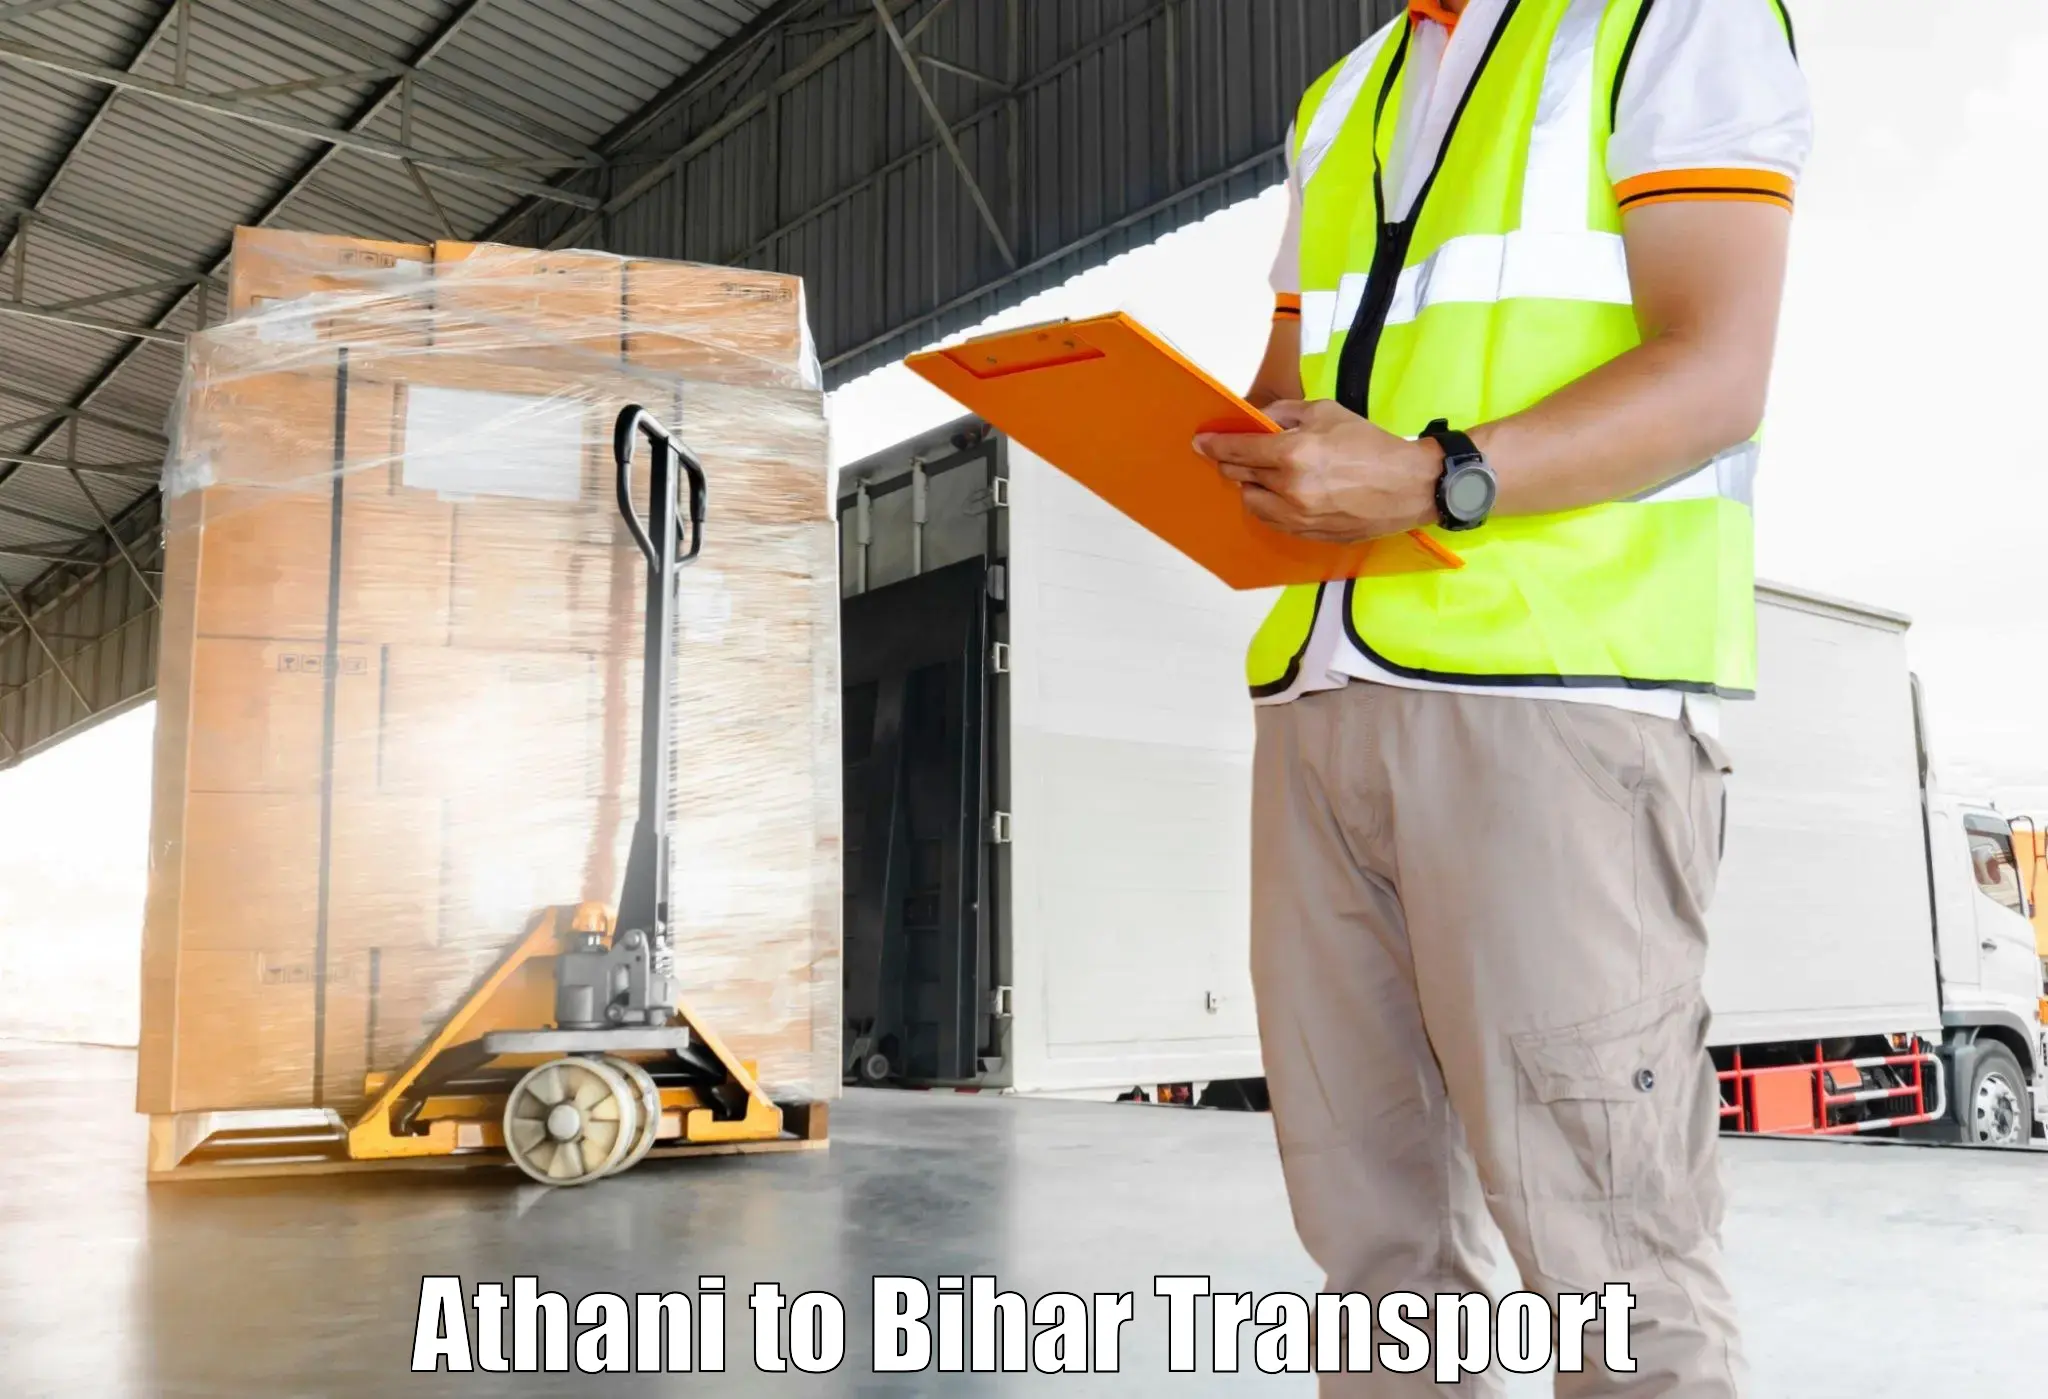 Bike shipping service Athani to Bihar